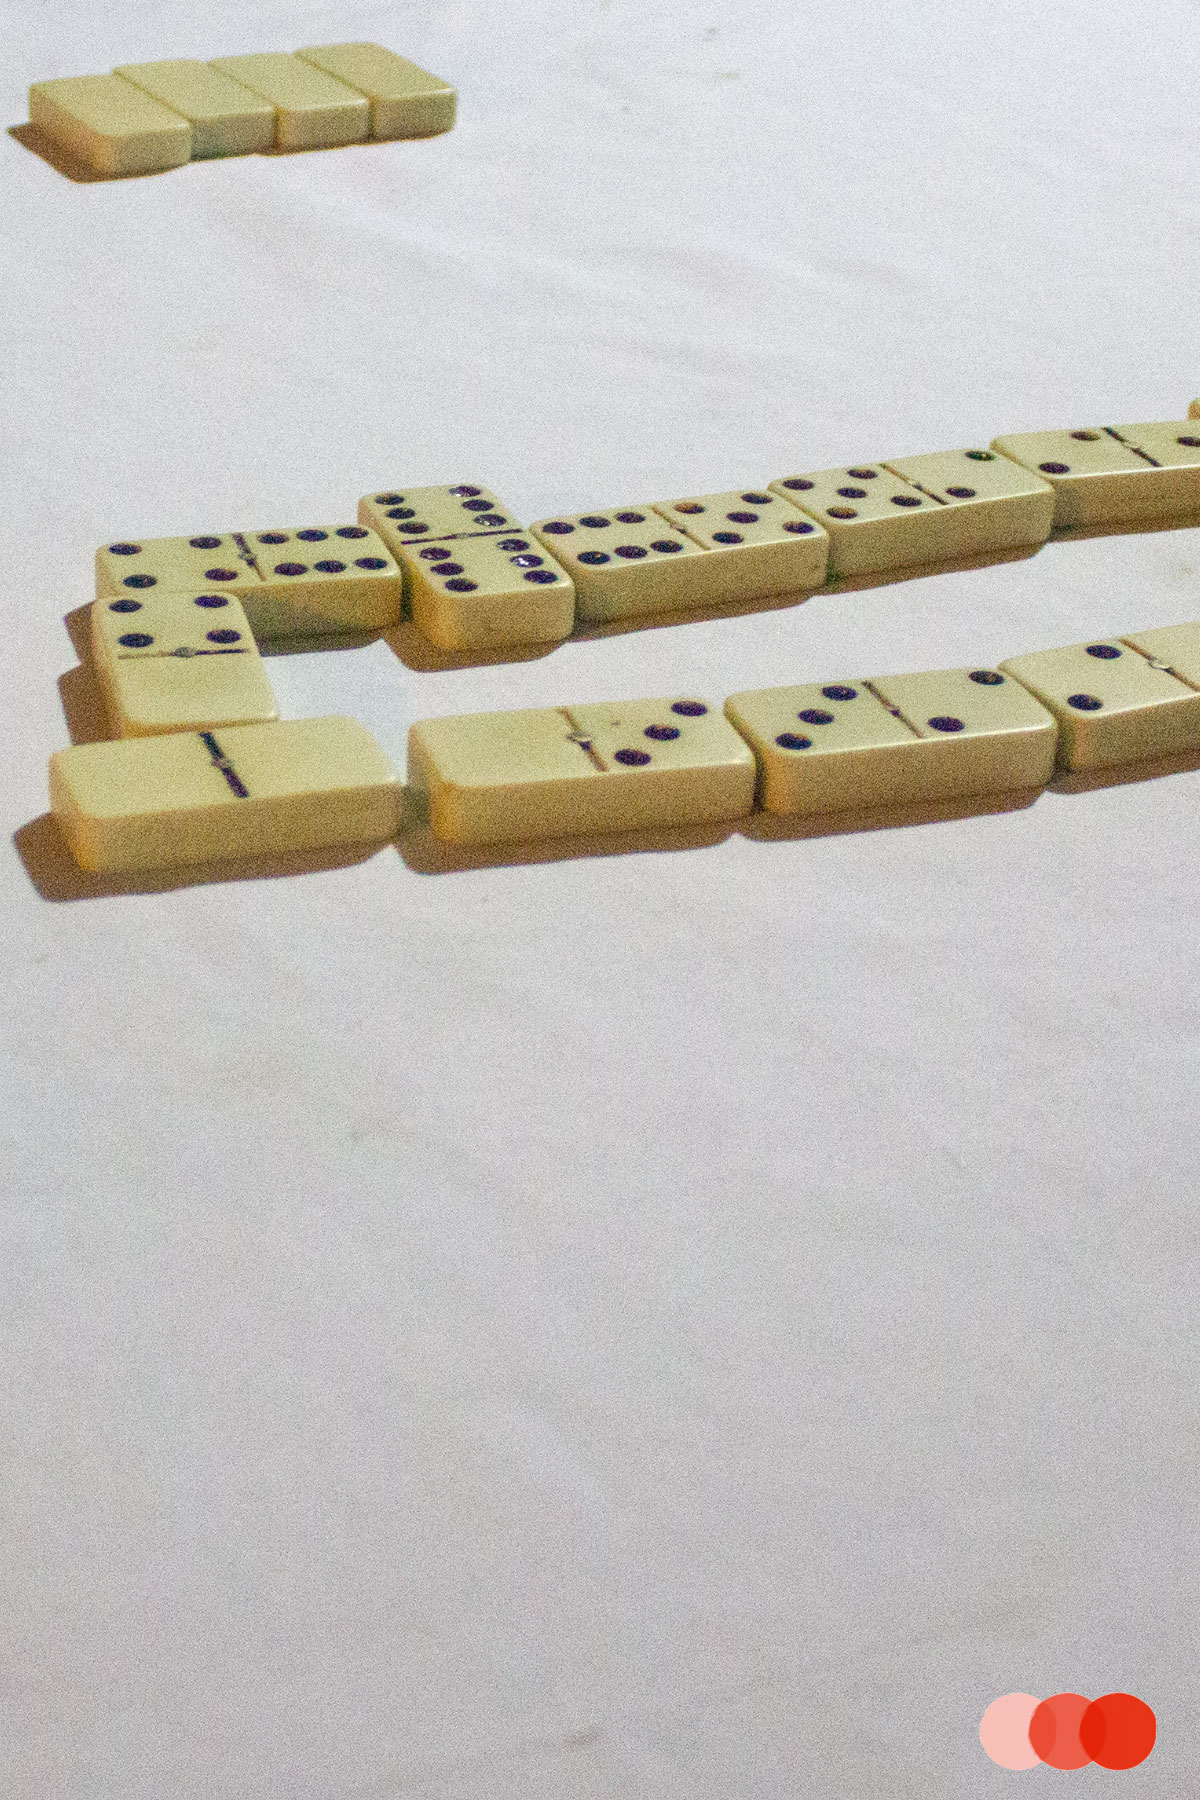 Domino spielen, Nuqui